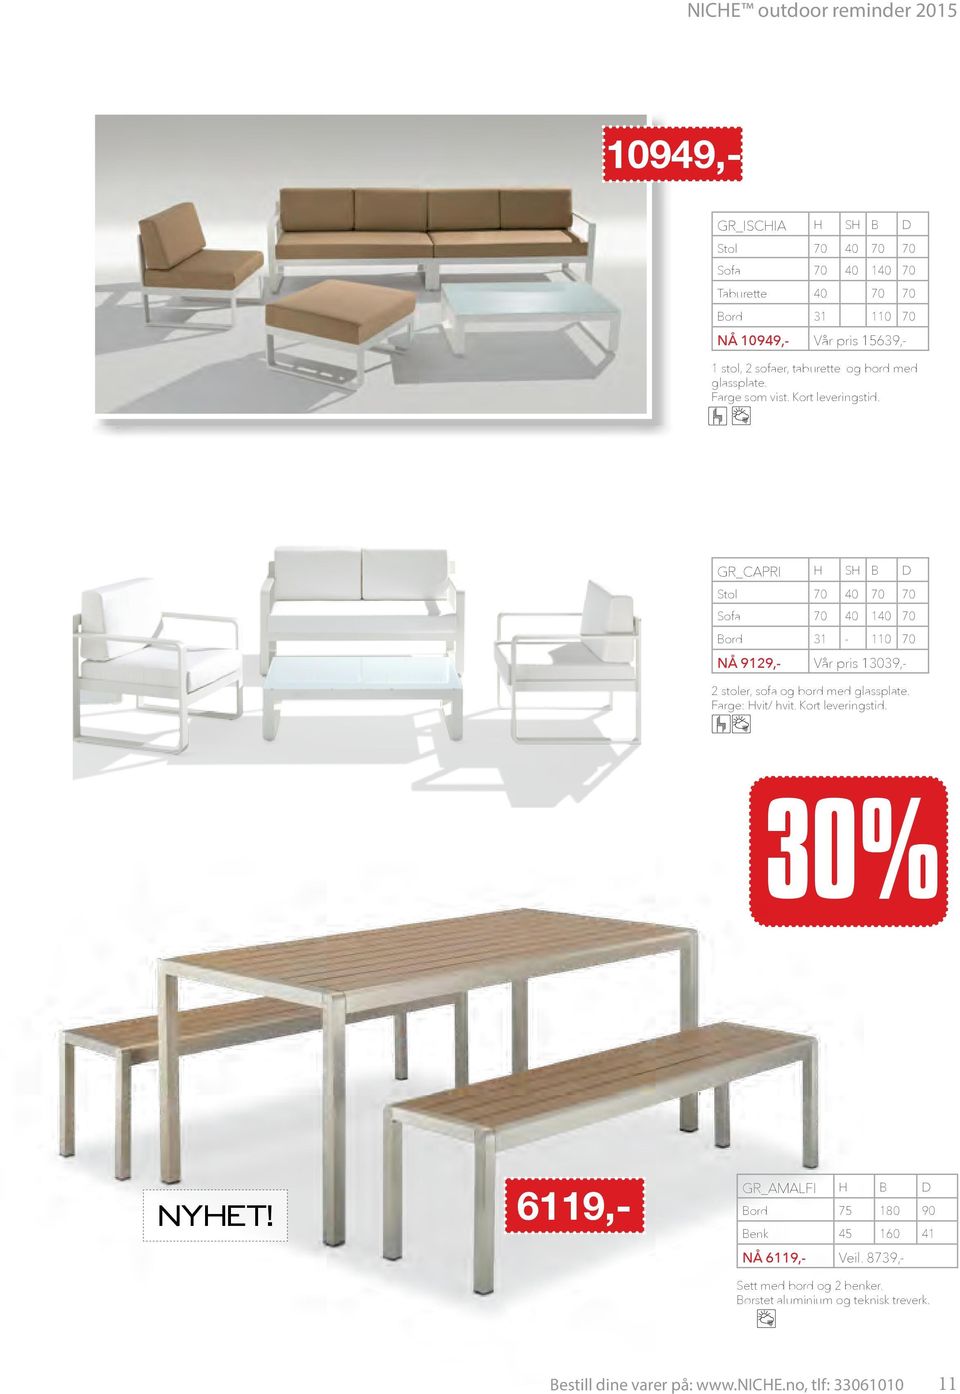 R_CAPRI S B Stol 70 40 70 70 Sofa 70 40 140 70 Bord 31-110 70 2 stoler, sofa og bord med glassplate. Farge: vit/ hvit.